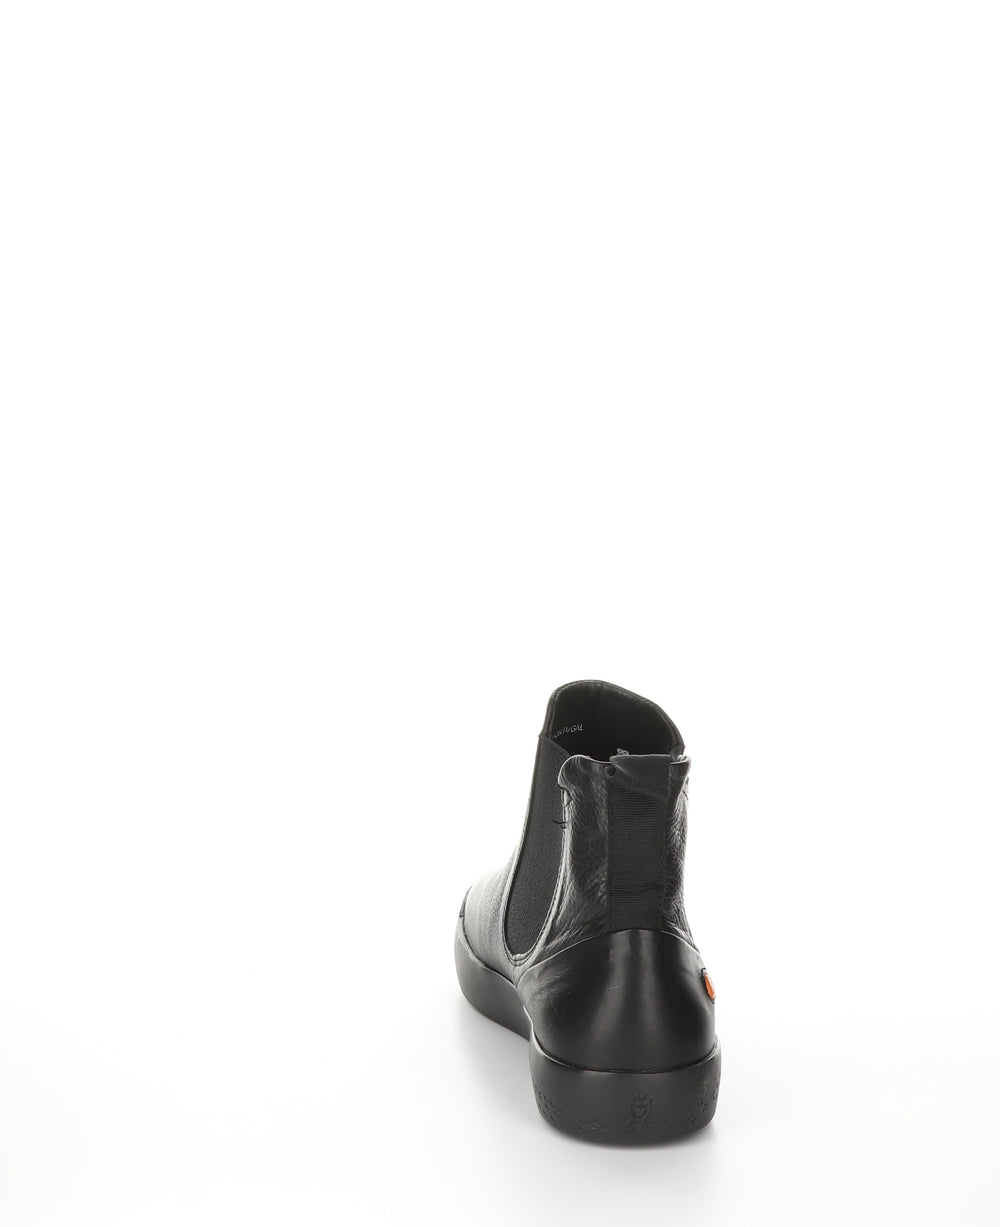 SAHA608SOF BLACK Chelsea Ankle Boots|SAHA608SOF Bottines Chelsea in Noir